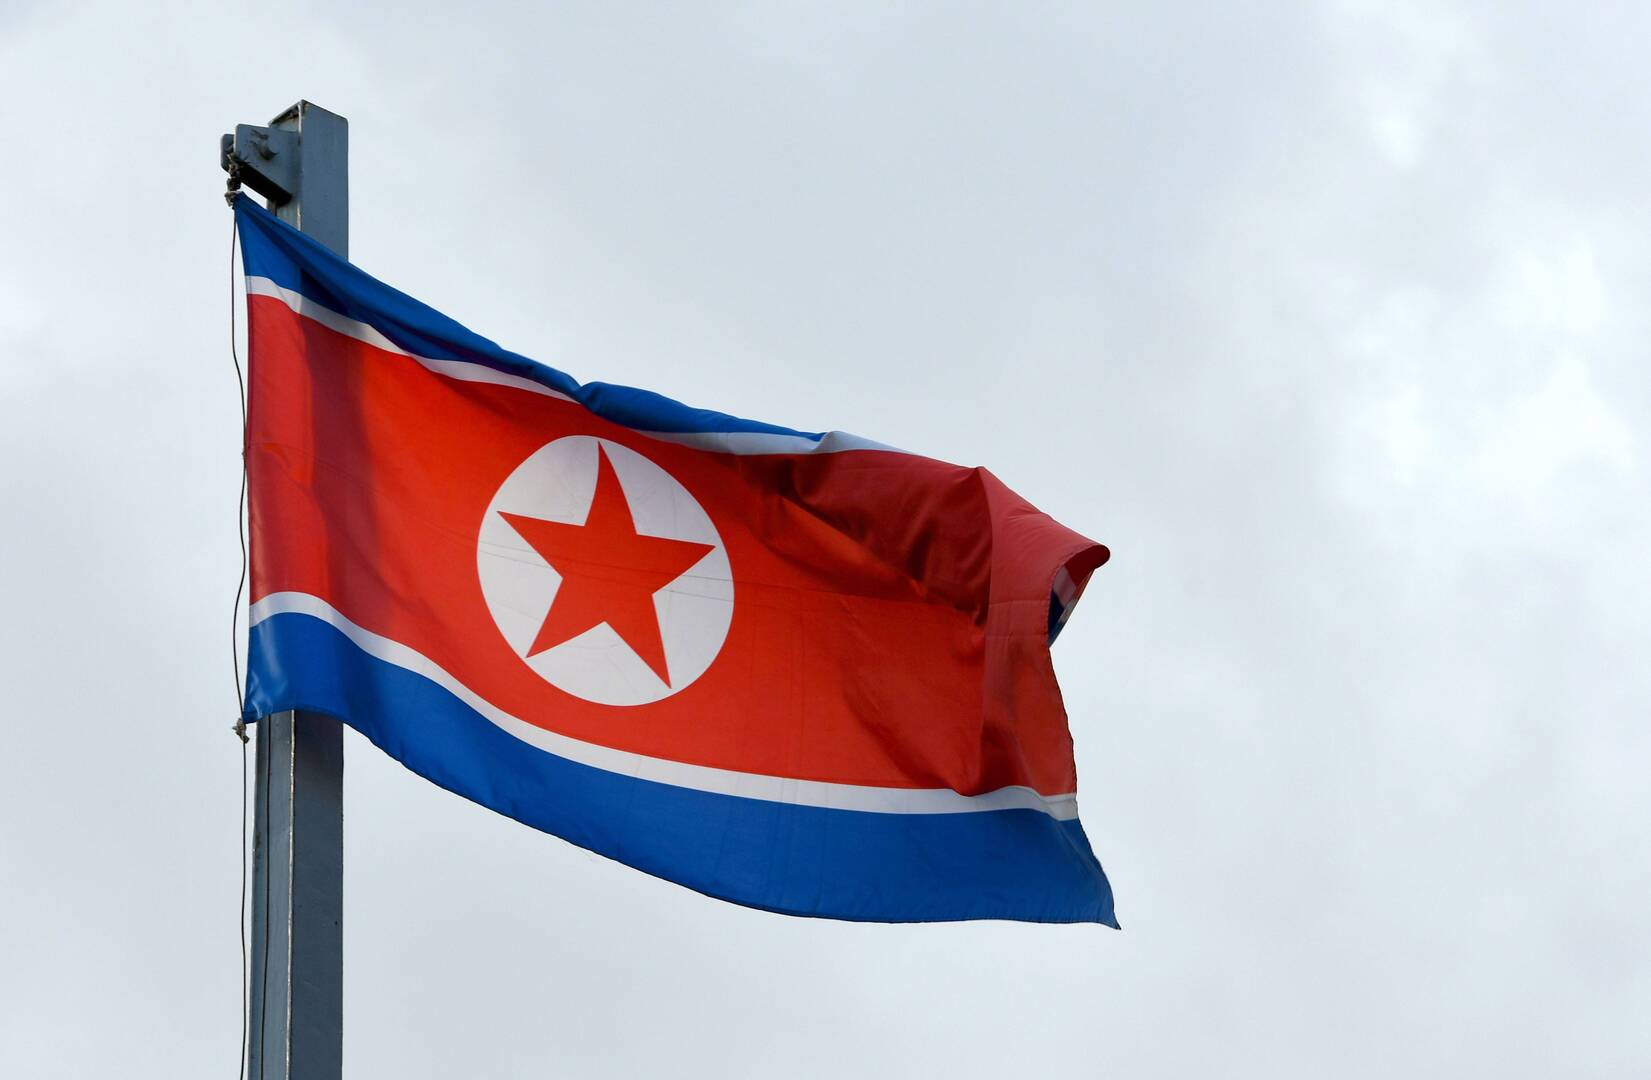 كوريا الشمالية تطلق صاروخا باليستيا قبالة سواحلها الشرقية